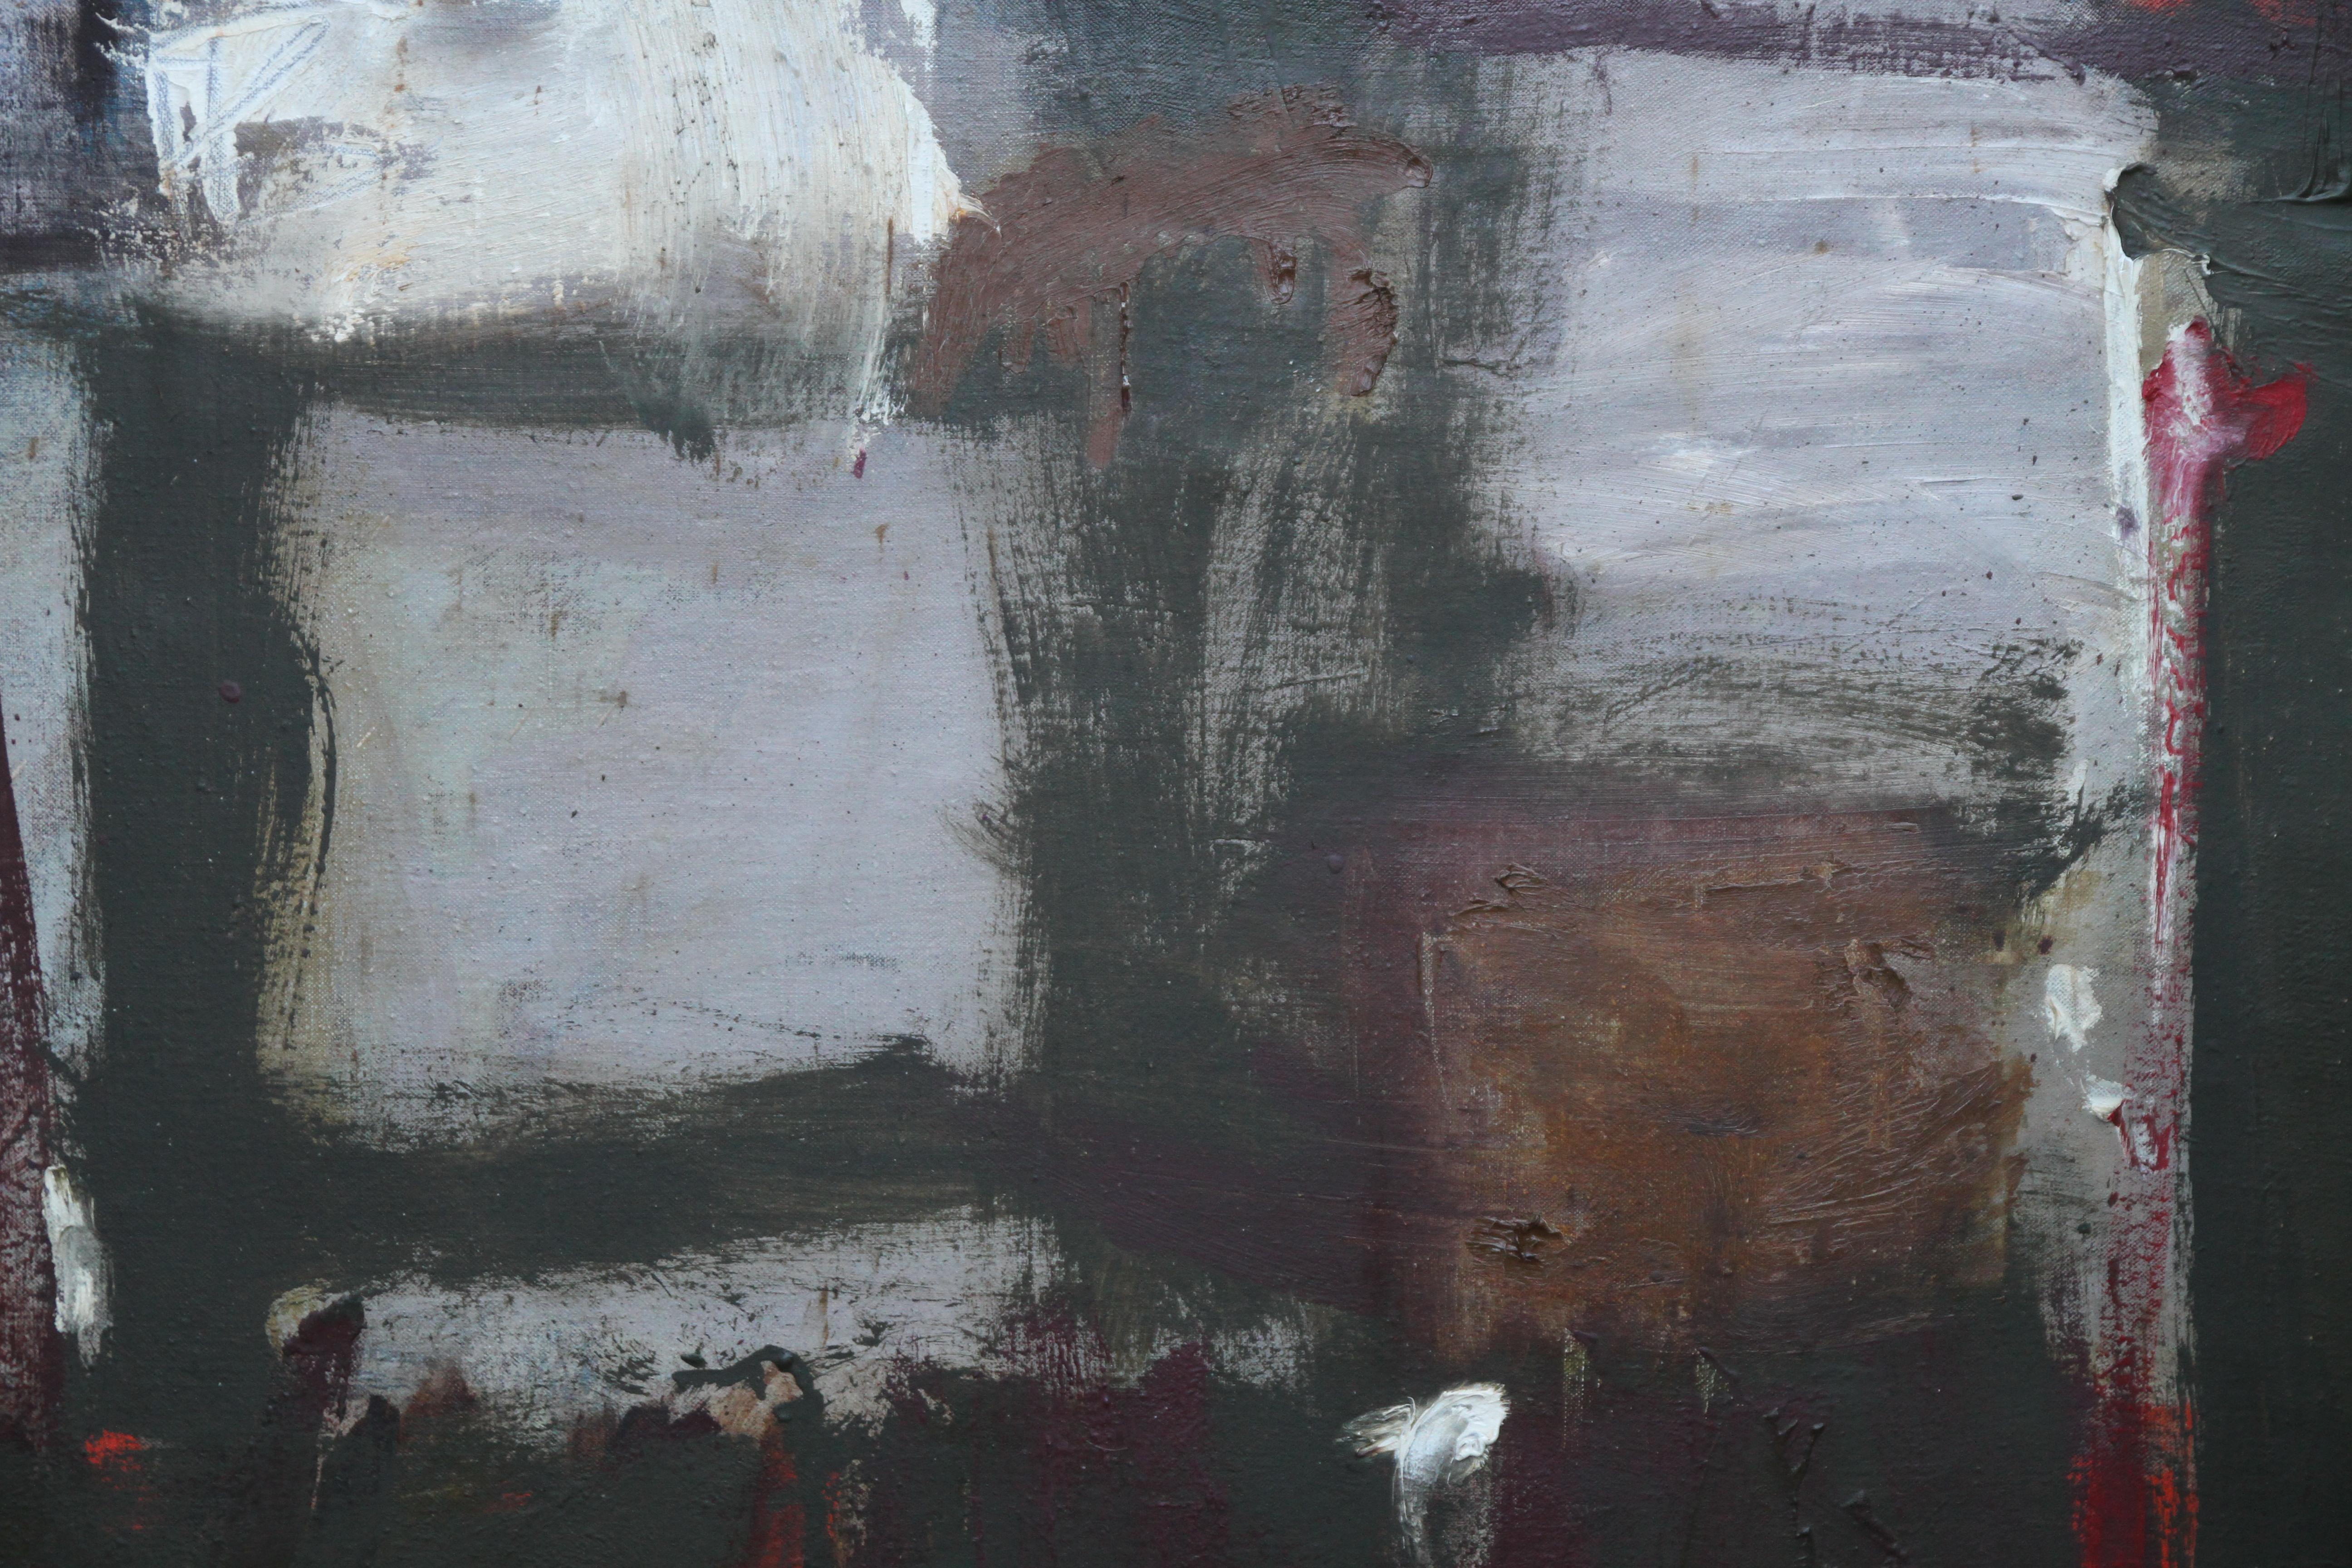 Très grande huile sur toile d'expressionnisme abstrait britannique de Trevor Bell, le dernier des modernistes de St Ives. Intitulée December in Anticoli et peinte en 1959 après la visite de Mark Rothko à St Ives, elle présente une ressemblance et